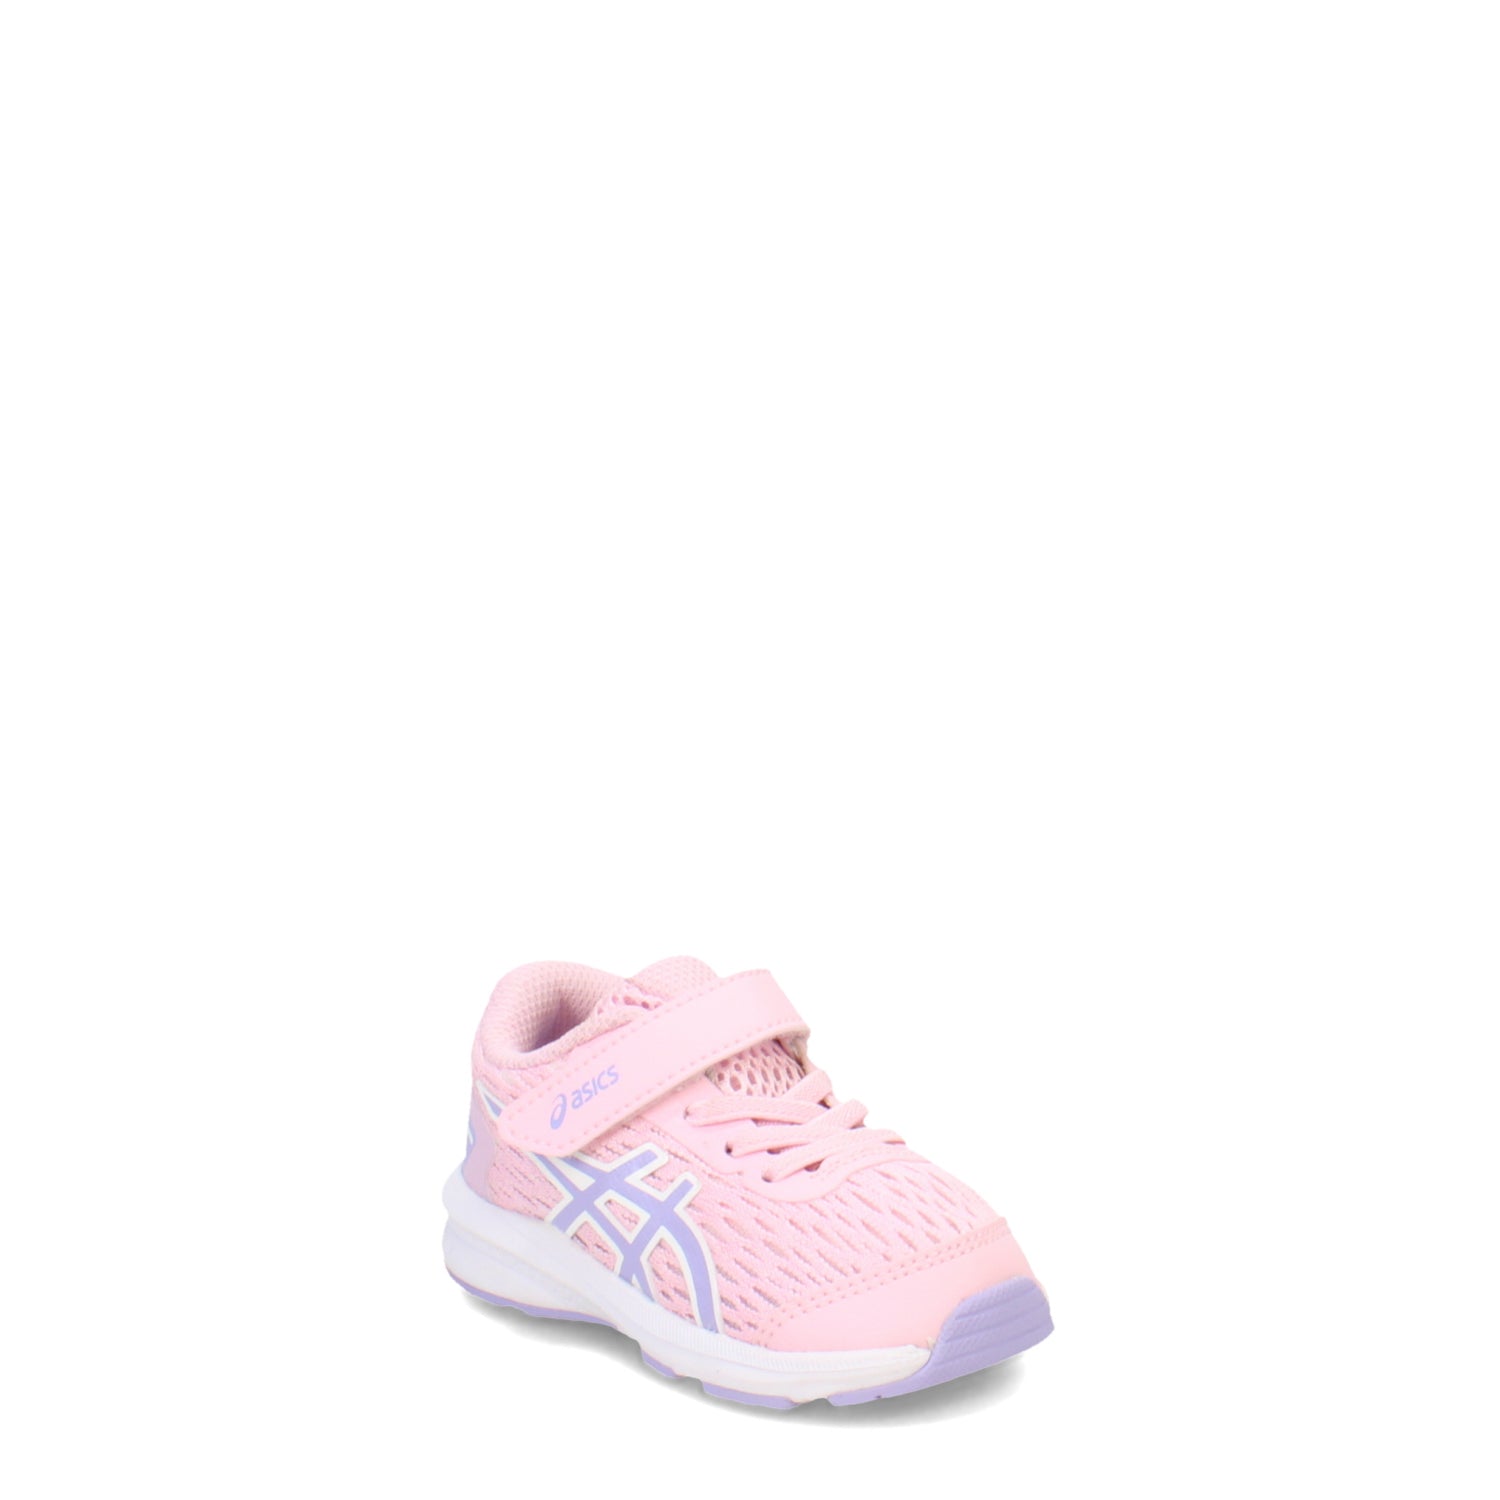 Peltz Shoes  Girl's ASICS GT-1000 9 Running Shoe -Toddler LIGHT PINK MULTI 1014A165.701